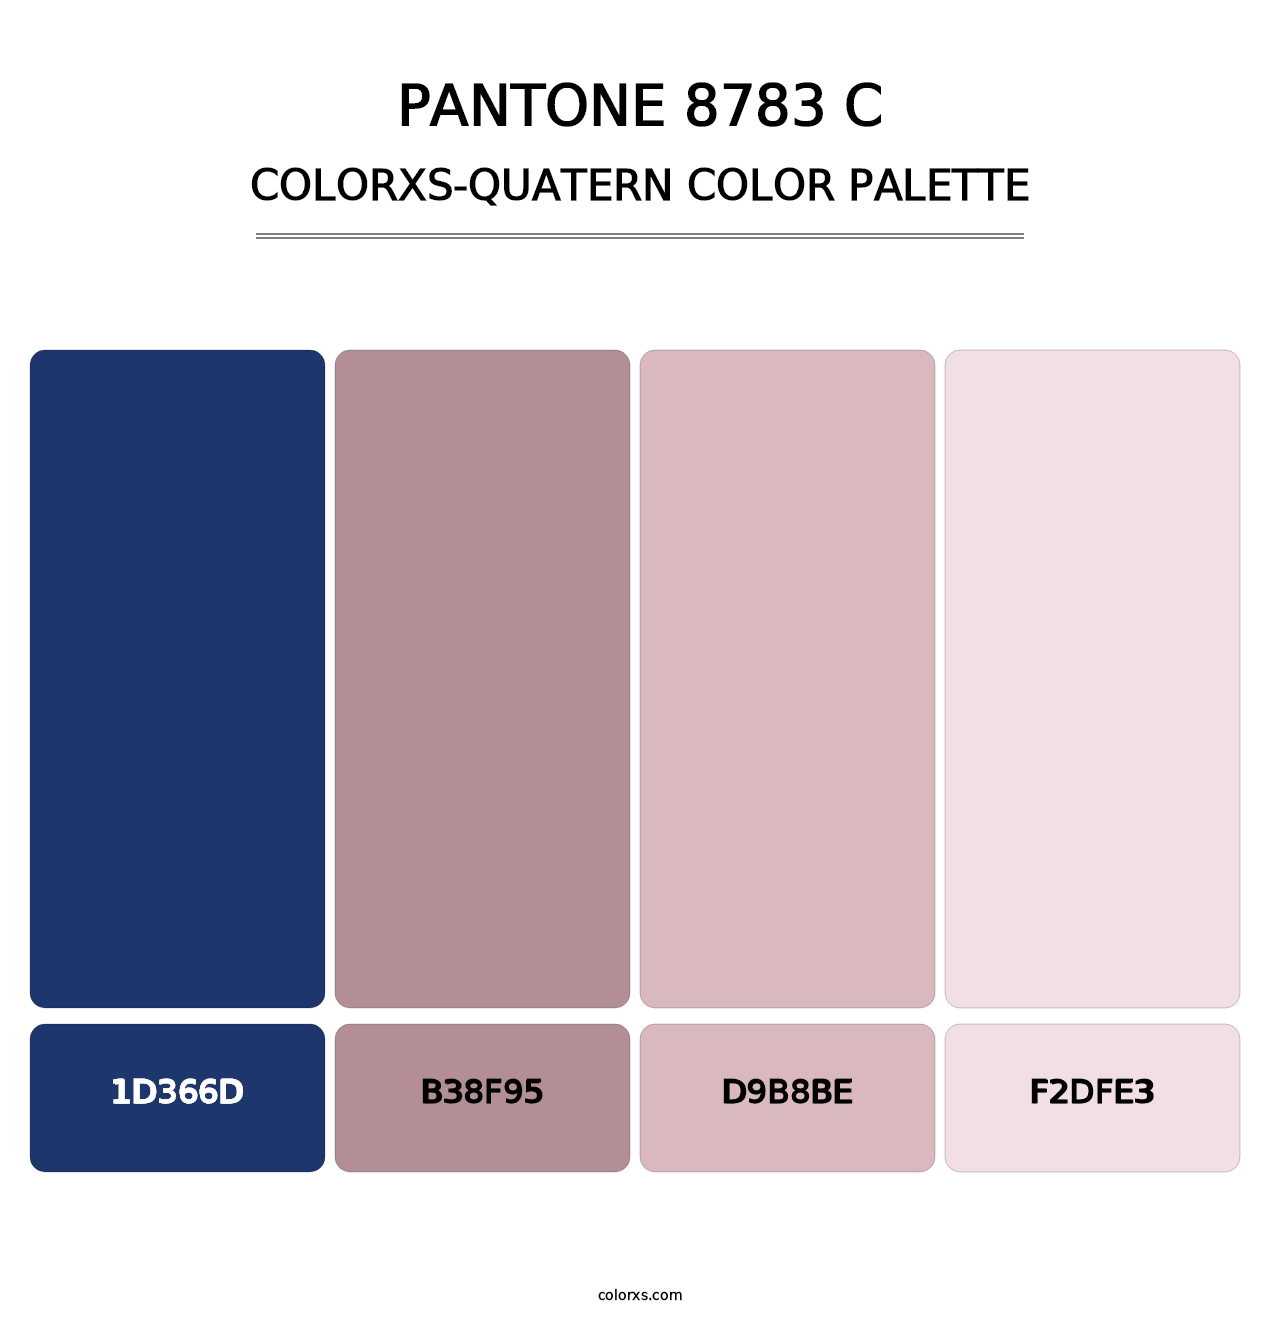 PANTONE 8783 C - Colorxs Quatern Palette